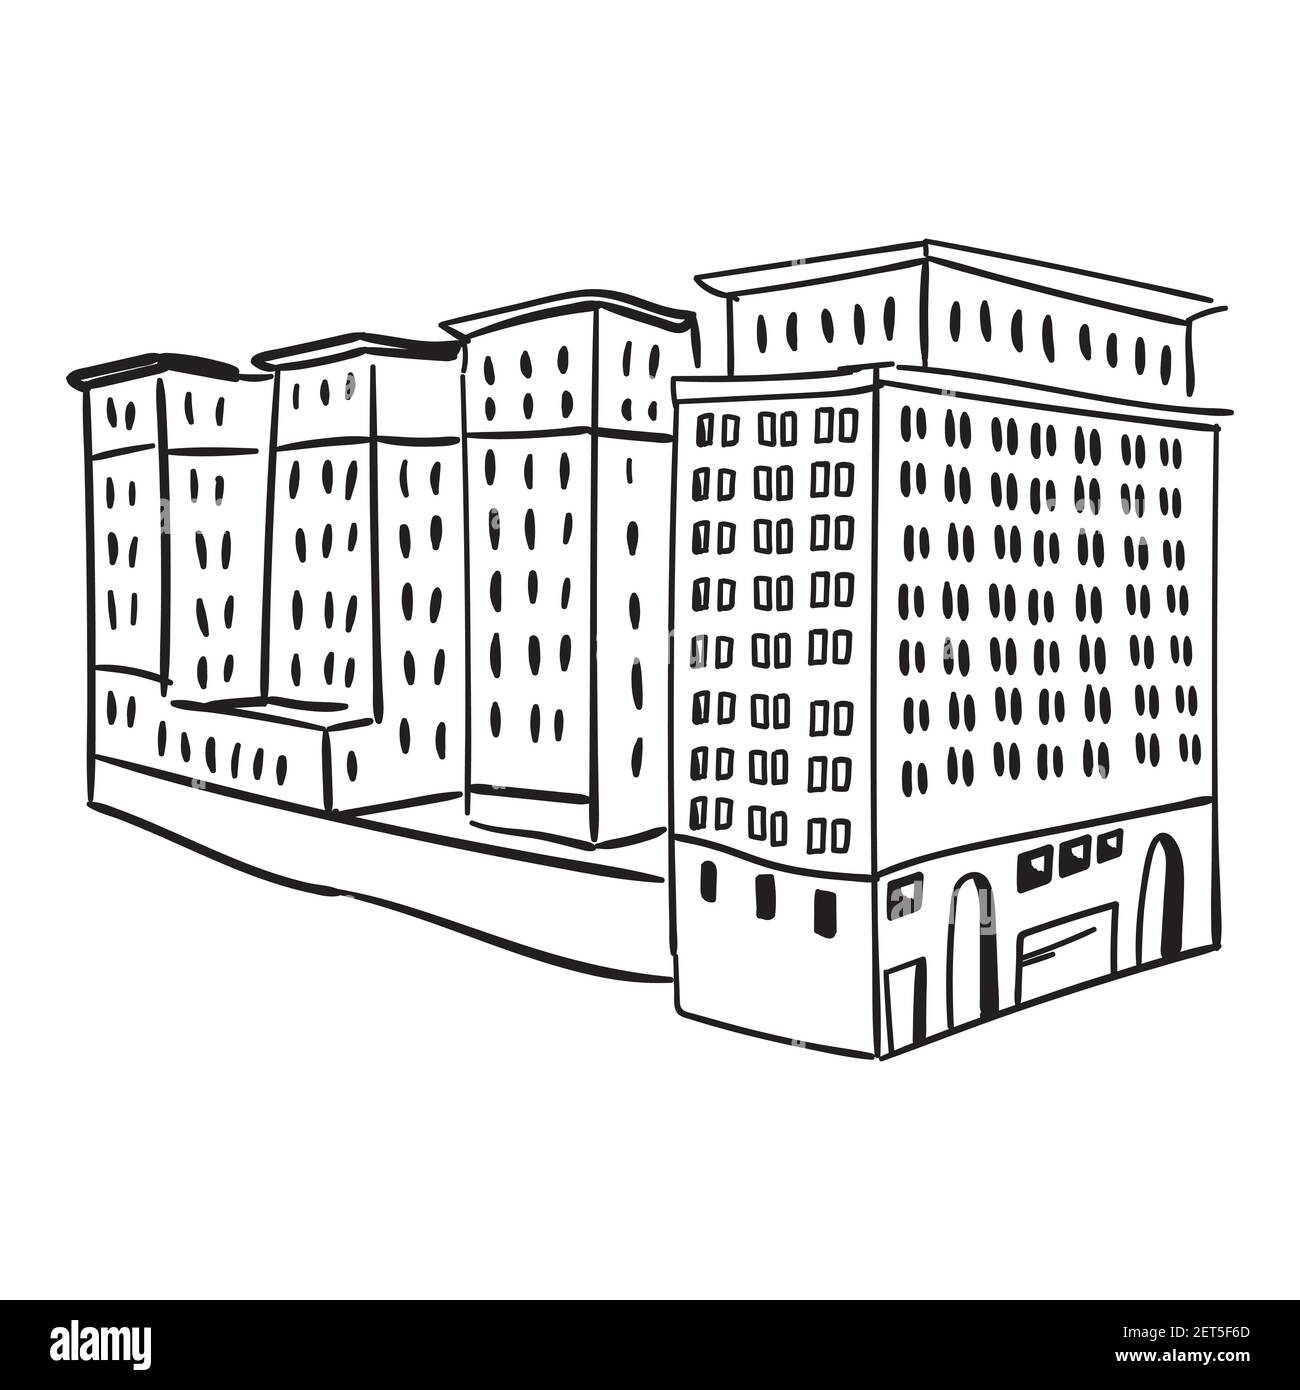 Doodle handgezeichnete Skizze des modernen hohen Gebäudes mit Fenstern. Mehrere Elemente. Schwarzer Umriss. Vektorgrafik isoliert auf weißem Hintergrund Stock Vektor